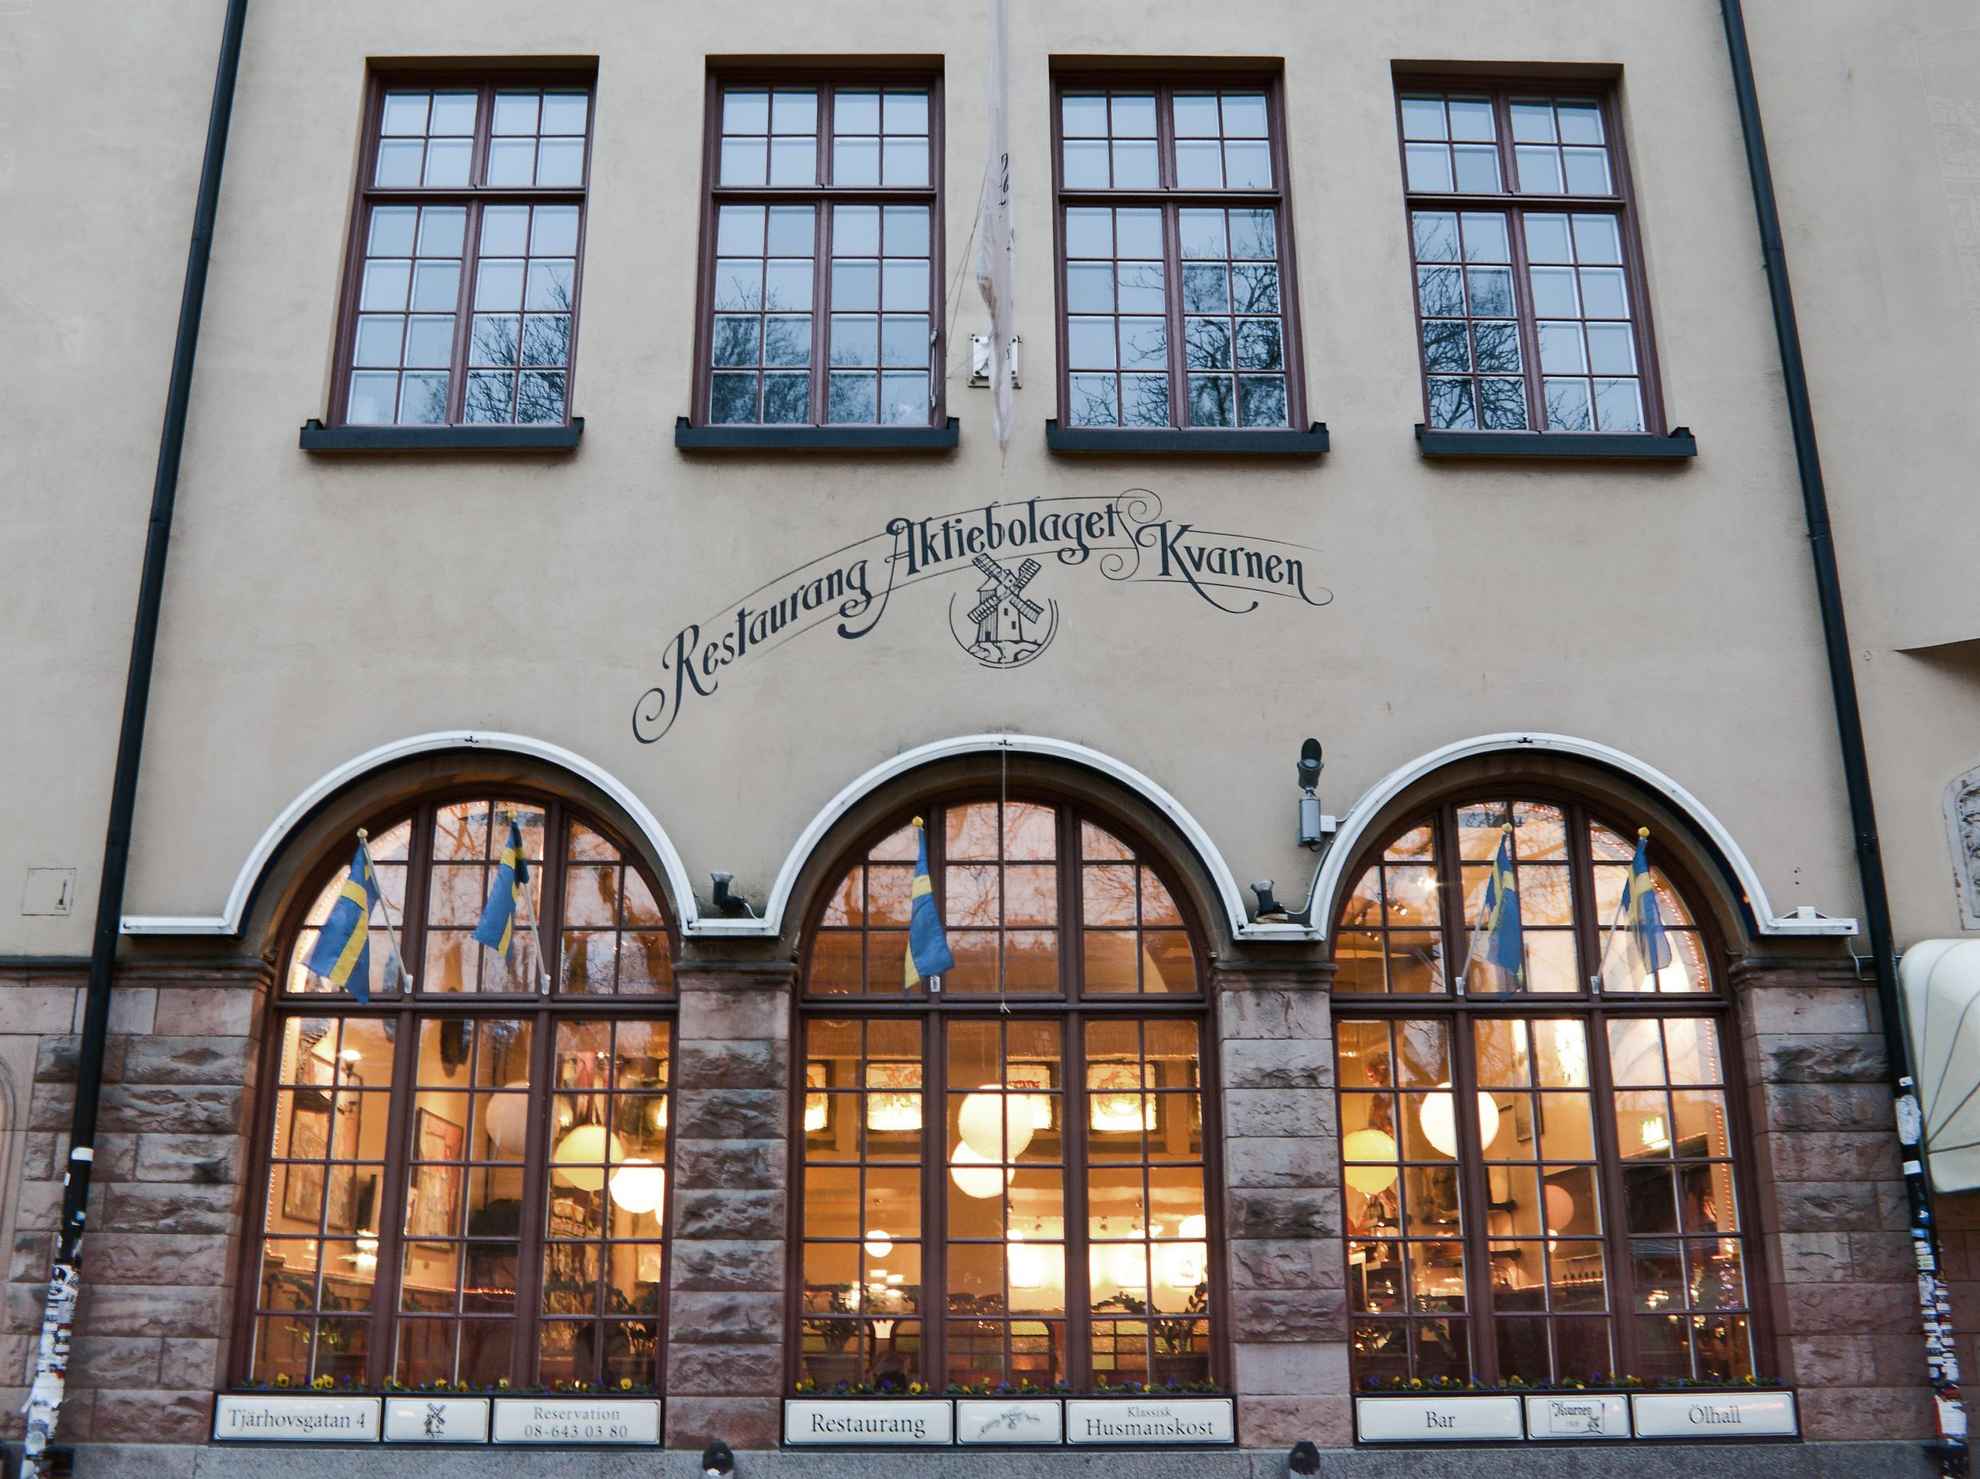 De buitenkant van het restaurant Kvarnen in Stockholm.